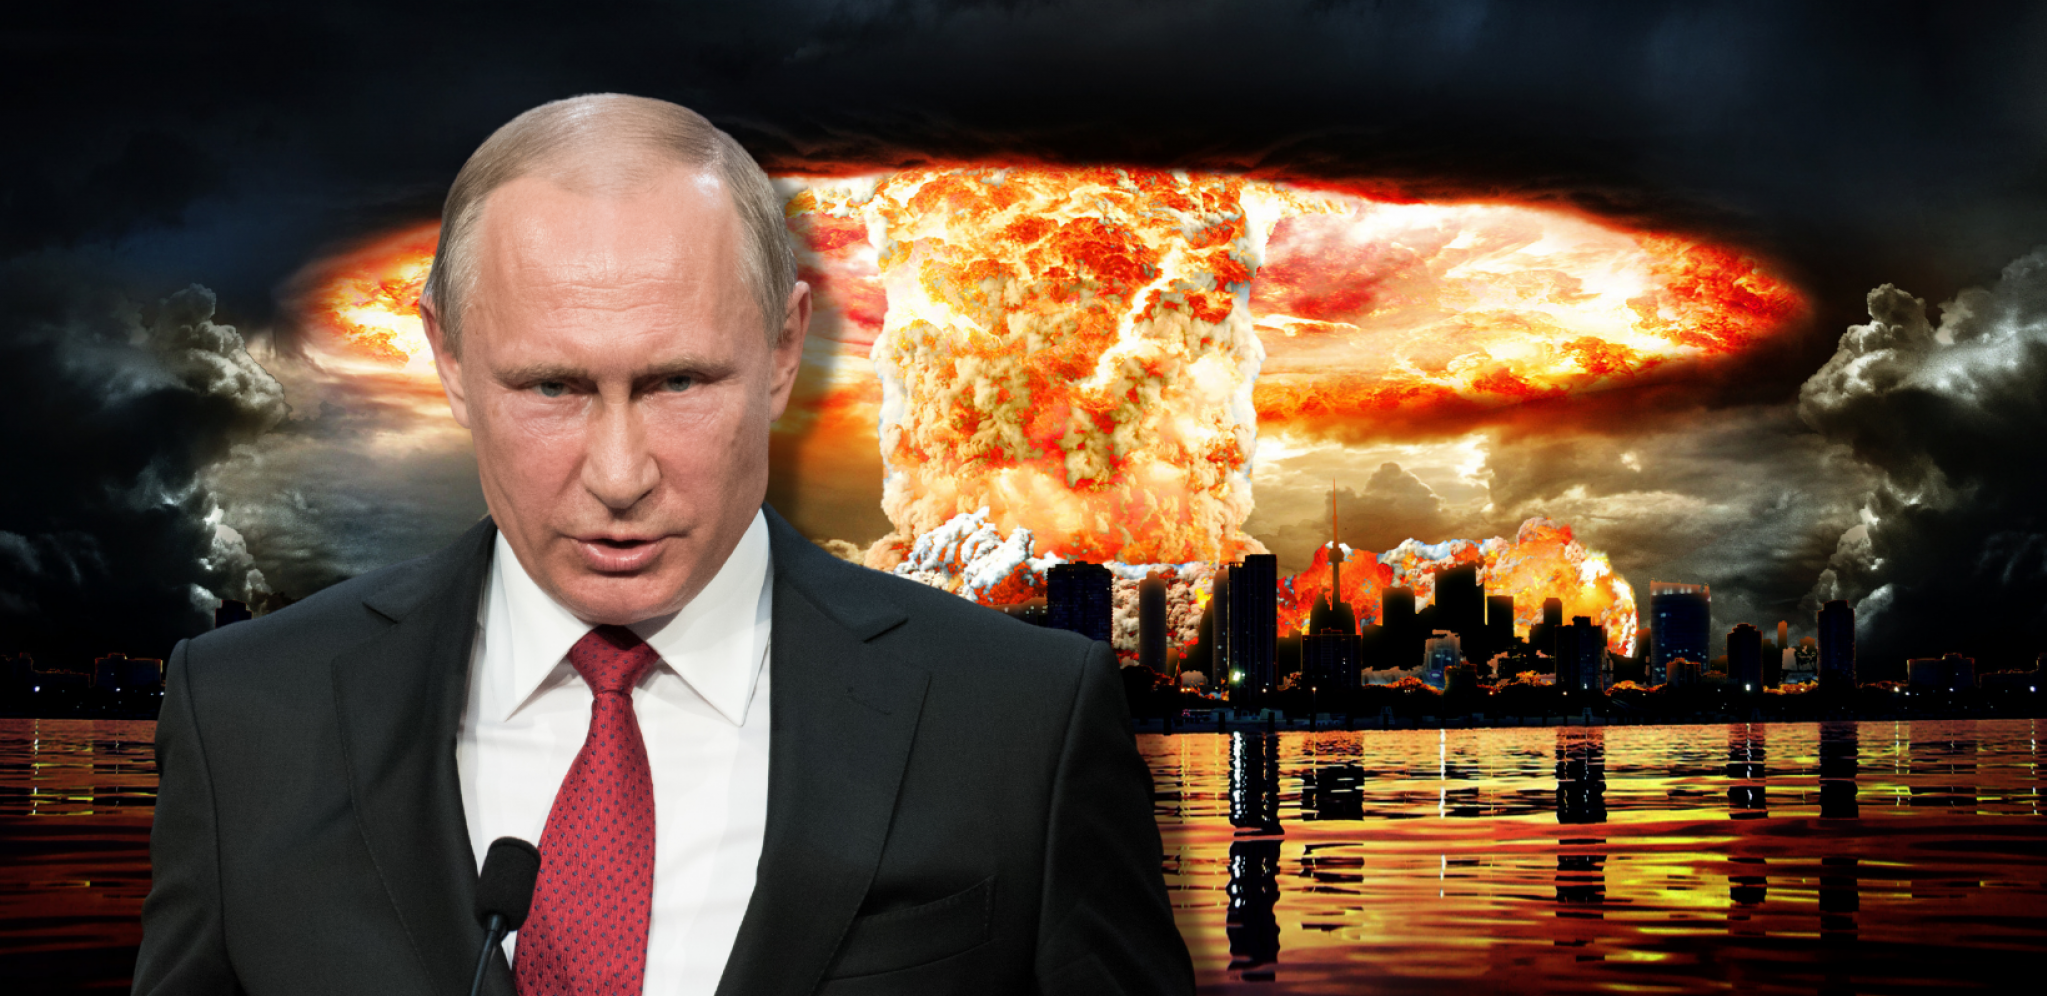 POKLOPIO GA NIKAD JAČE Američki političar rekao da NATO može da uništi Rusiju za tri dana, usledio brutalan odgovor Putinovog generala